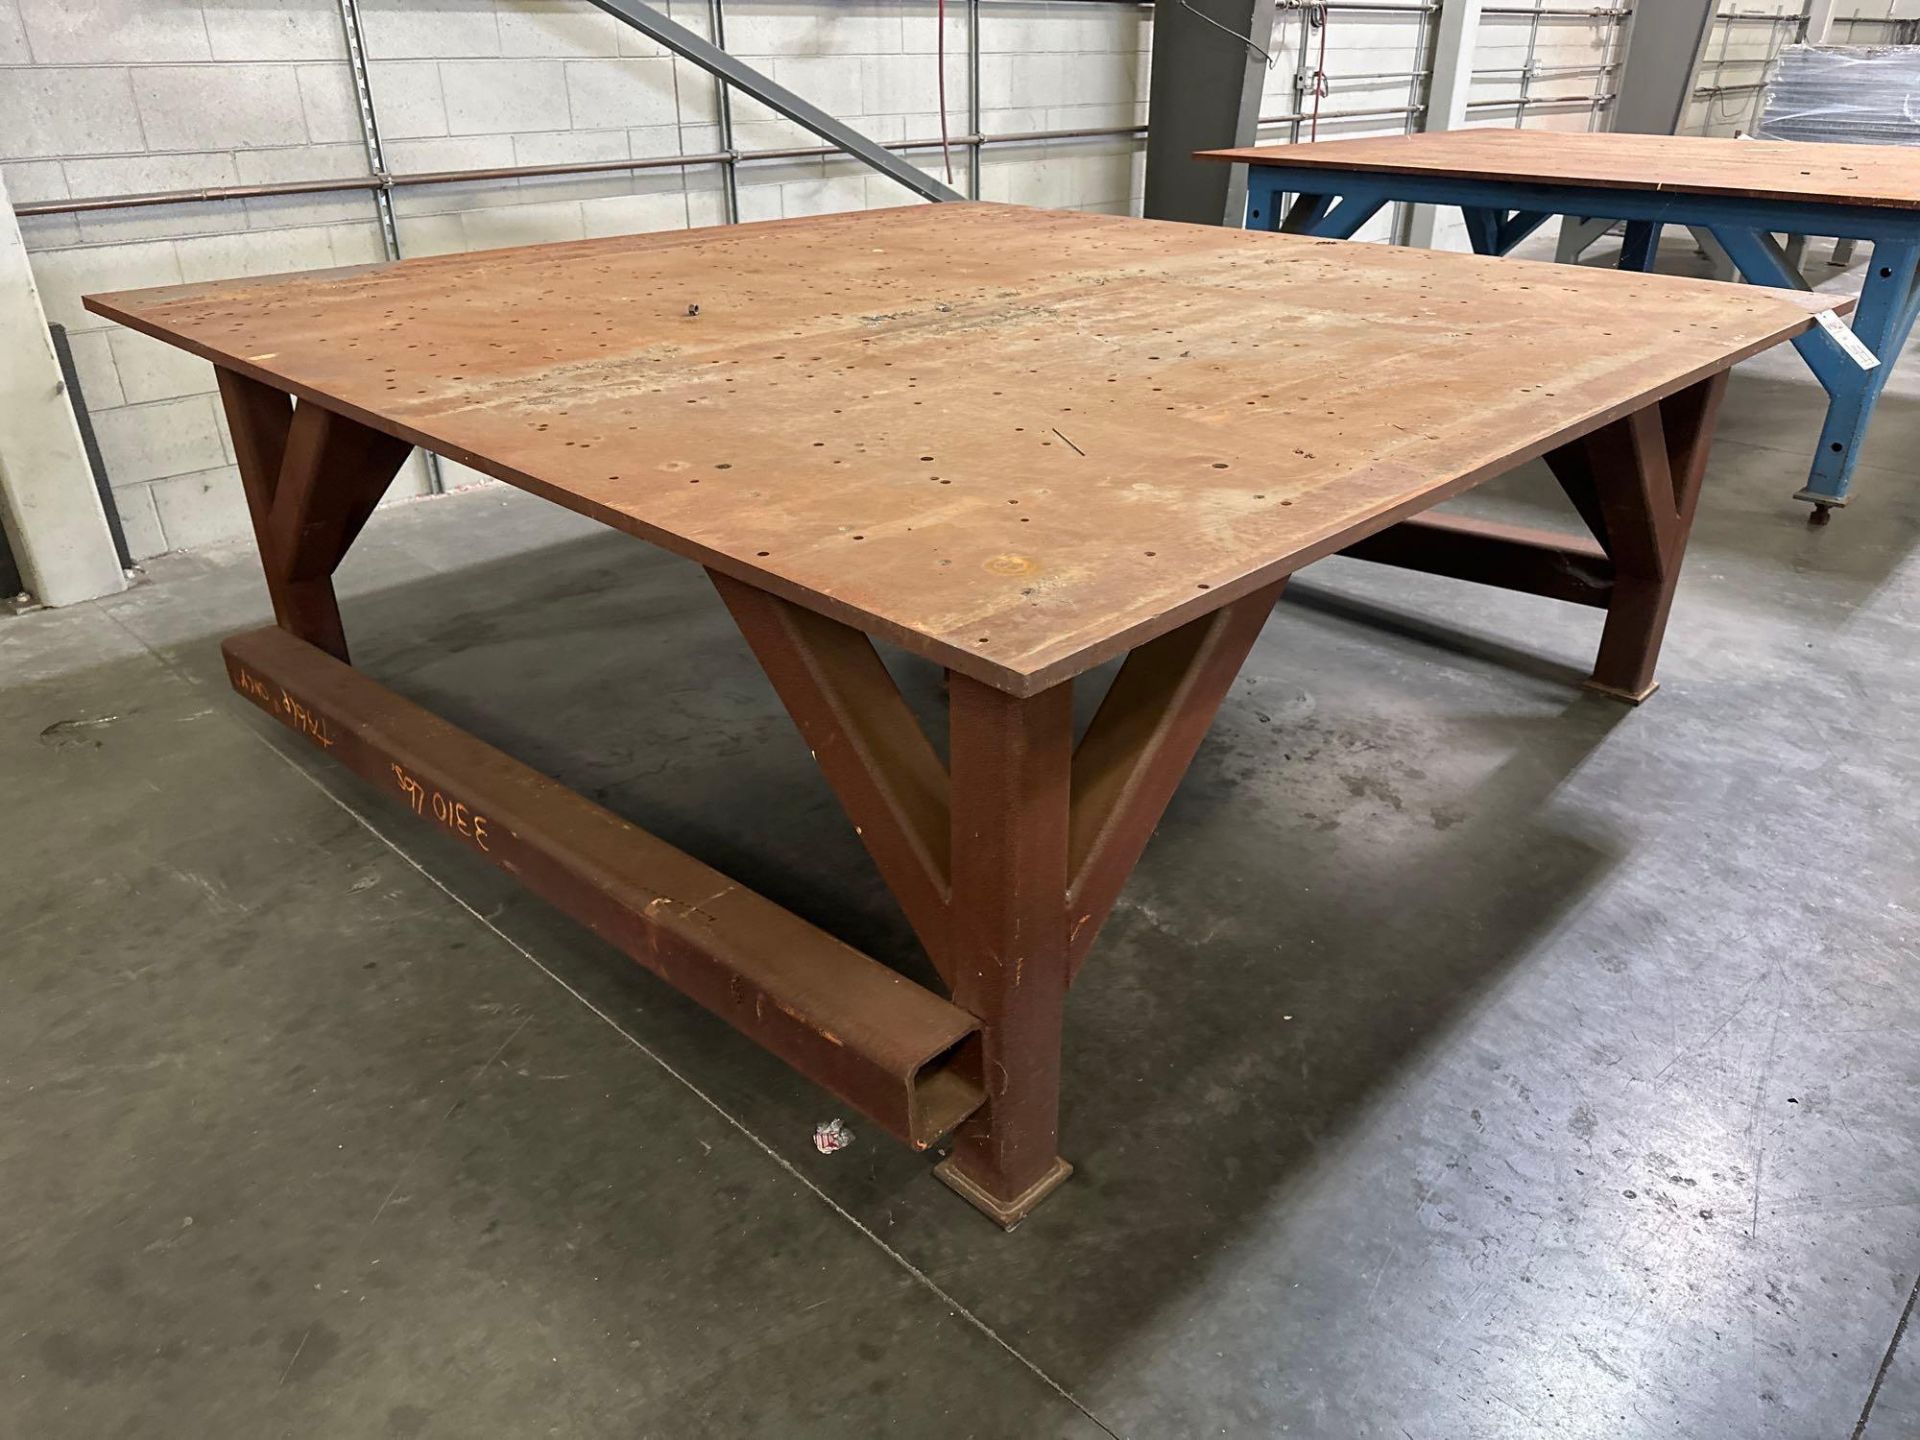 96”L x 96”W x 34”H Steel Welding Table